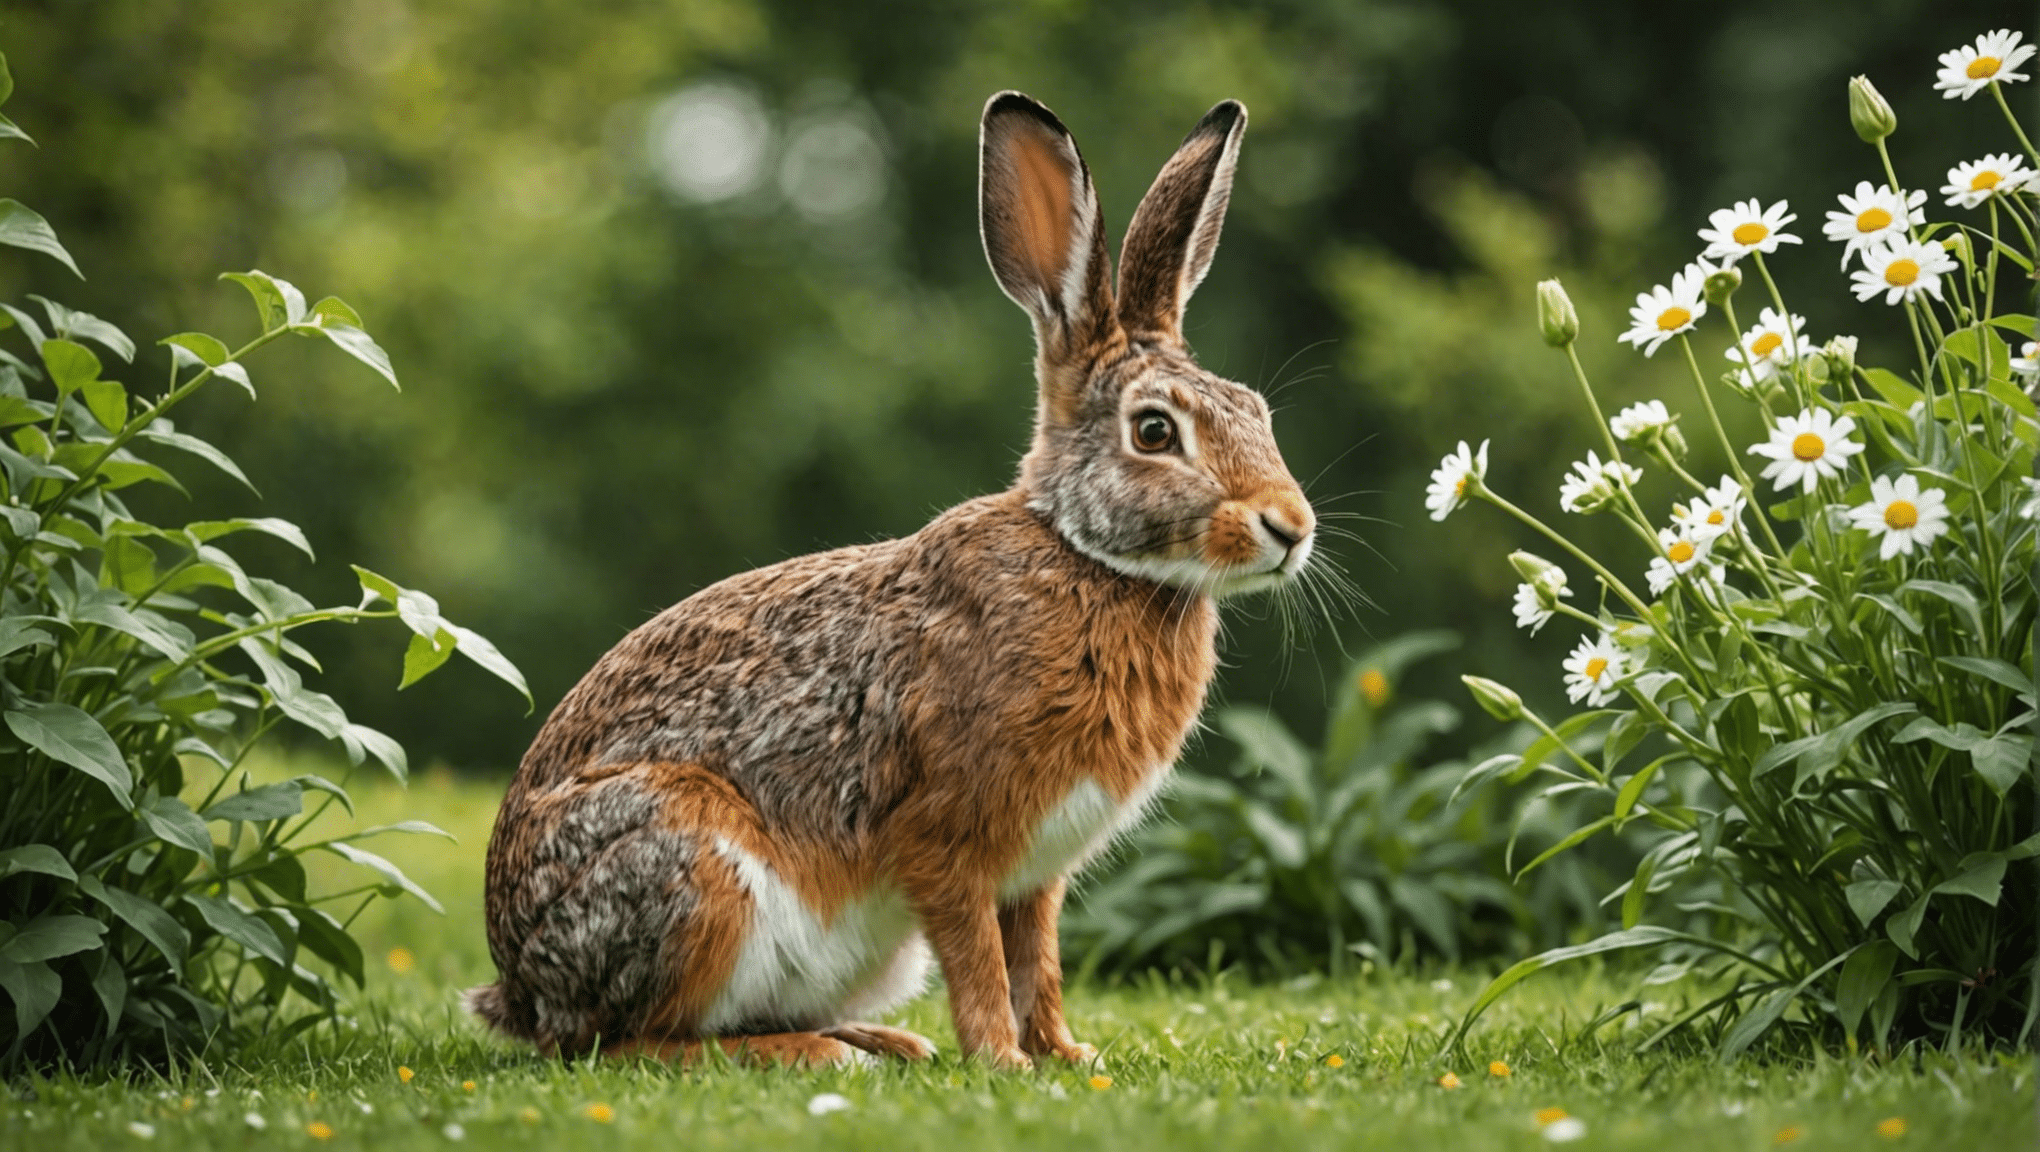 odkrijte razlike med zajci in zajci v tem pronicljivem raziskovanju njihovih edinstvenih značilnosti in vedenja.